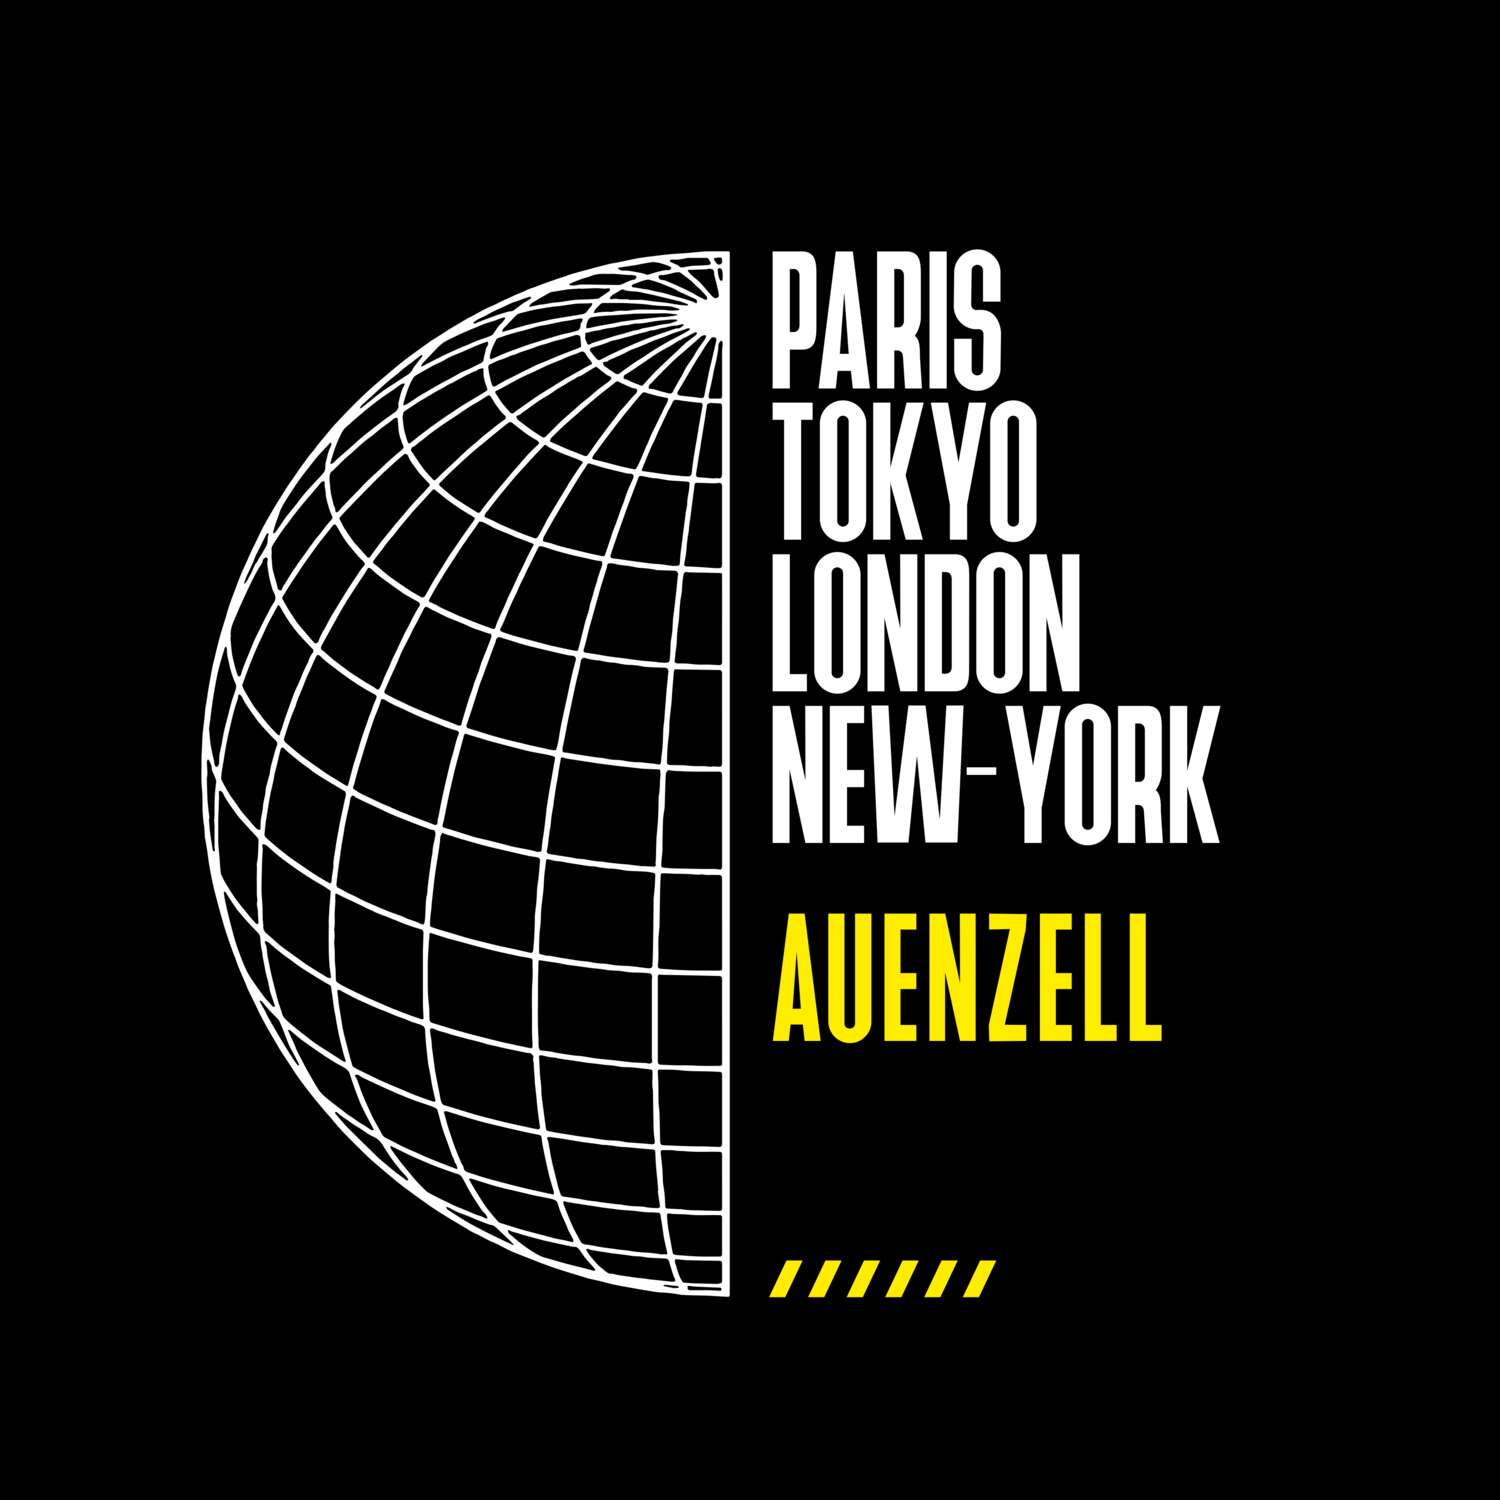 Auenzell T-Shirt »Paris Tokyo London«